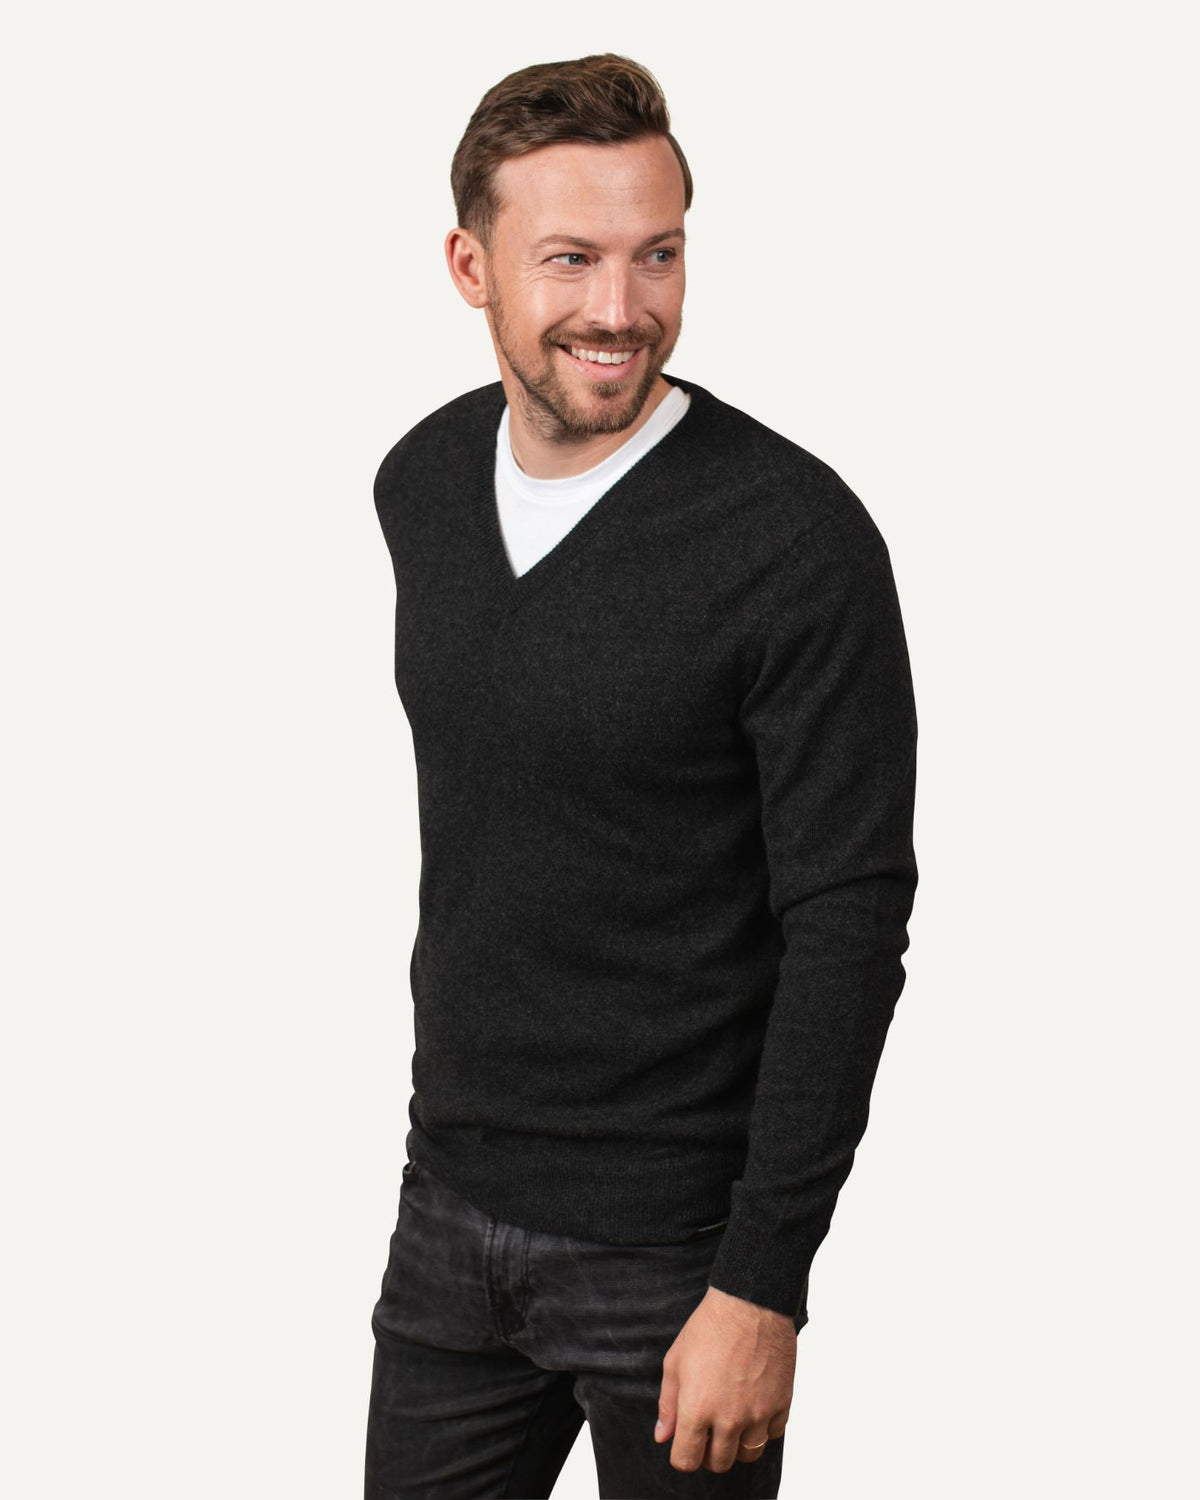 Cashmere V-neck sweater for men in dark gray by MOGLI & MARTINI #color_anthracite